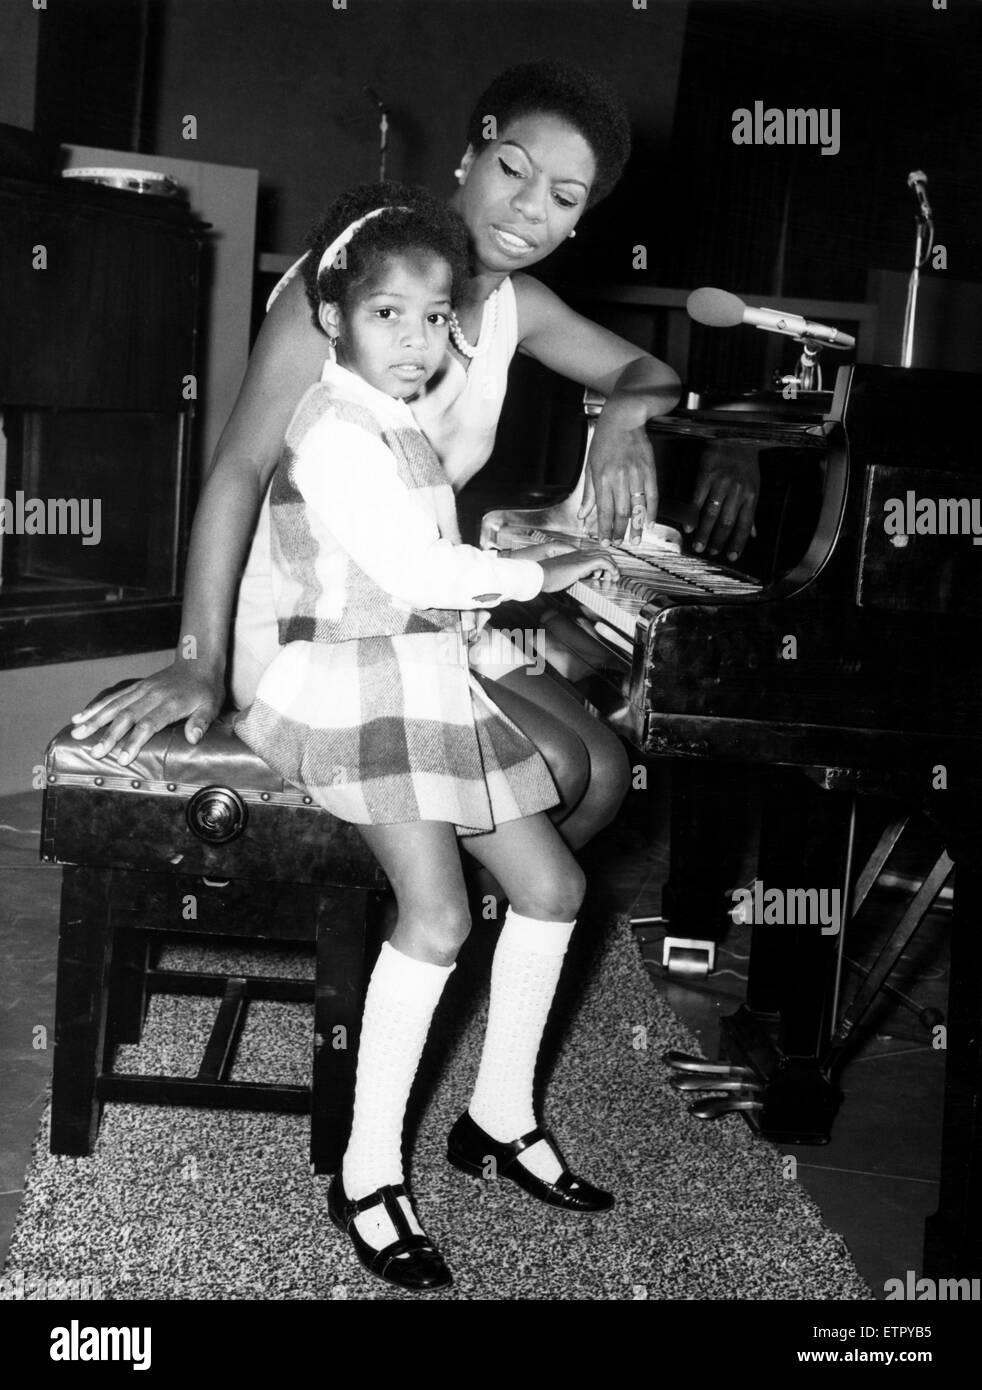 La chanteuse américaine, Nina Simone, au Royaume-Uni l'enregistrement d'une émission de télévision appelée 'Sound of Soul' Week-end à Londres pour la télévision. Sa fille de 5 ans Lisa aime à regarder sa mère au studio, et elle est déjà jouer du piano. Wembley, Londres. 28t Banque D'Images